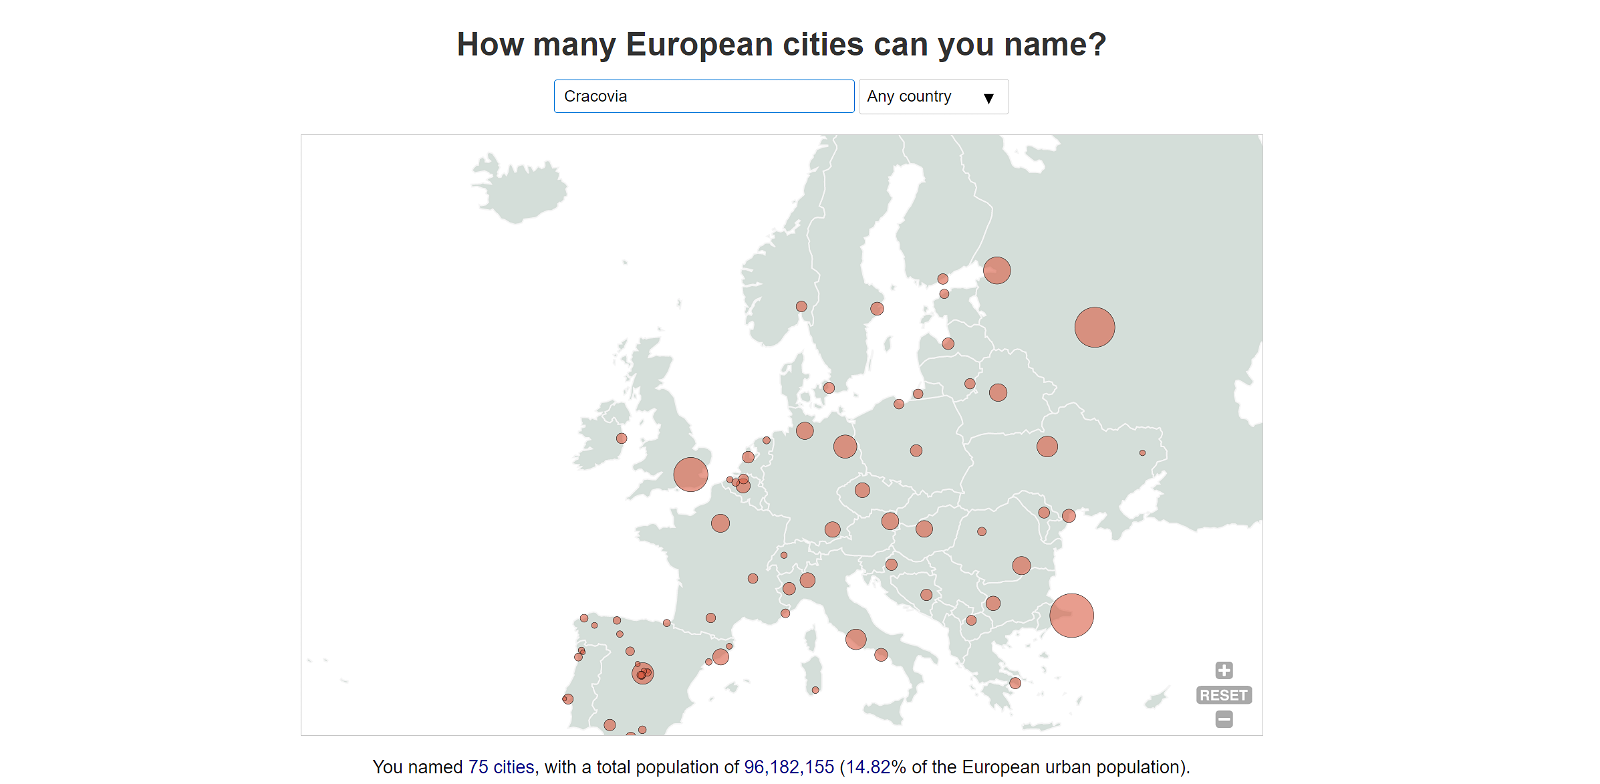 El mapa de Europa con múltiples ciudades señaladas tras haber acertado